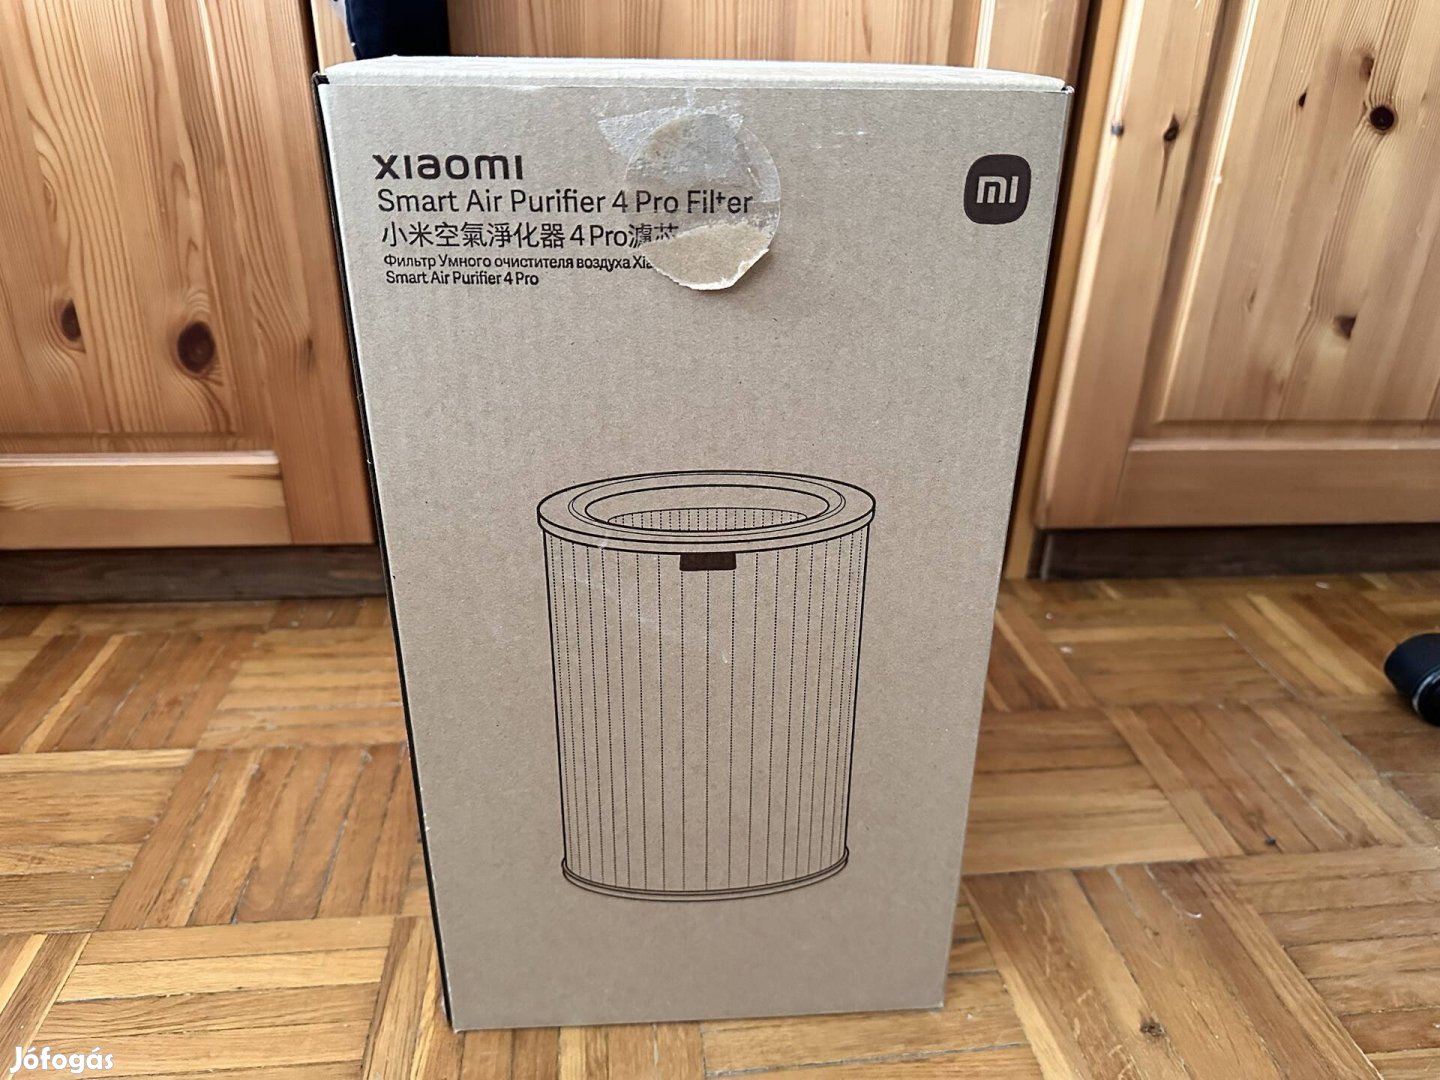 Xiaomi Smart Air Purifier 4 Filter